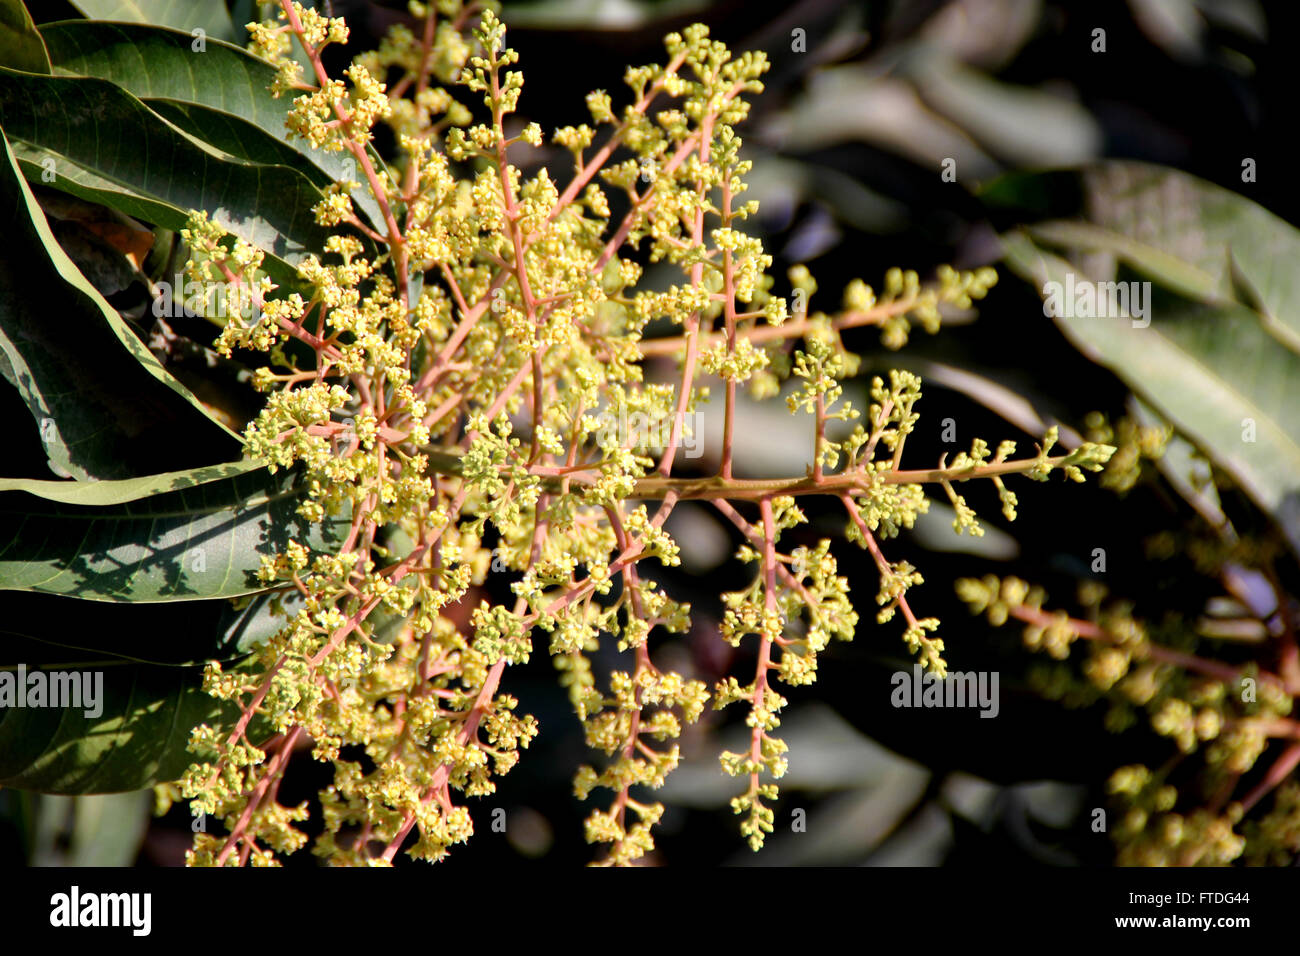 Mangobaum in Blume, Mangifera Indica, immergrüner Baum, Blätter lanzettlich, hellgelben Blüten und Steinfrucht Obst, viele Sorten Stockfoto